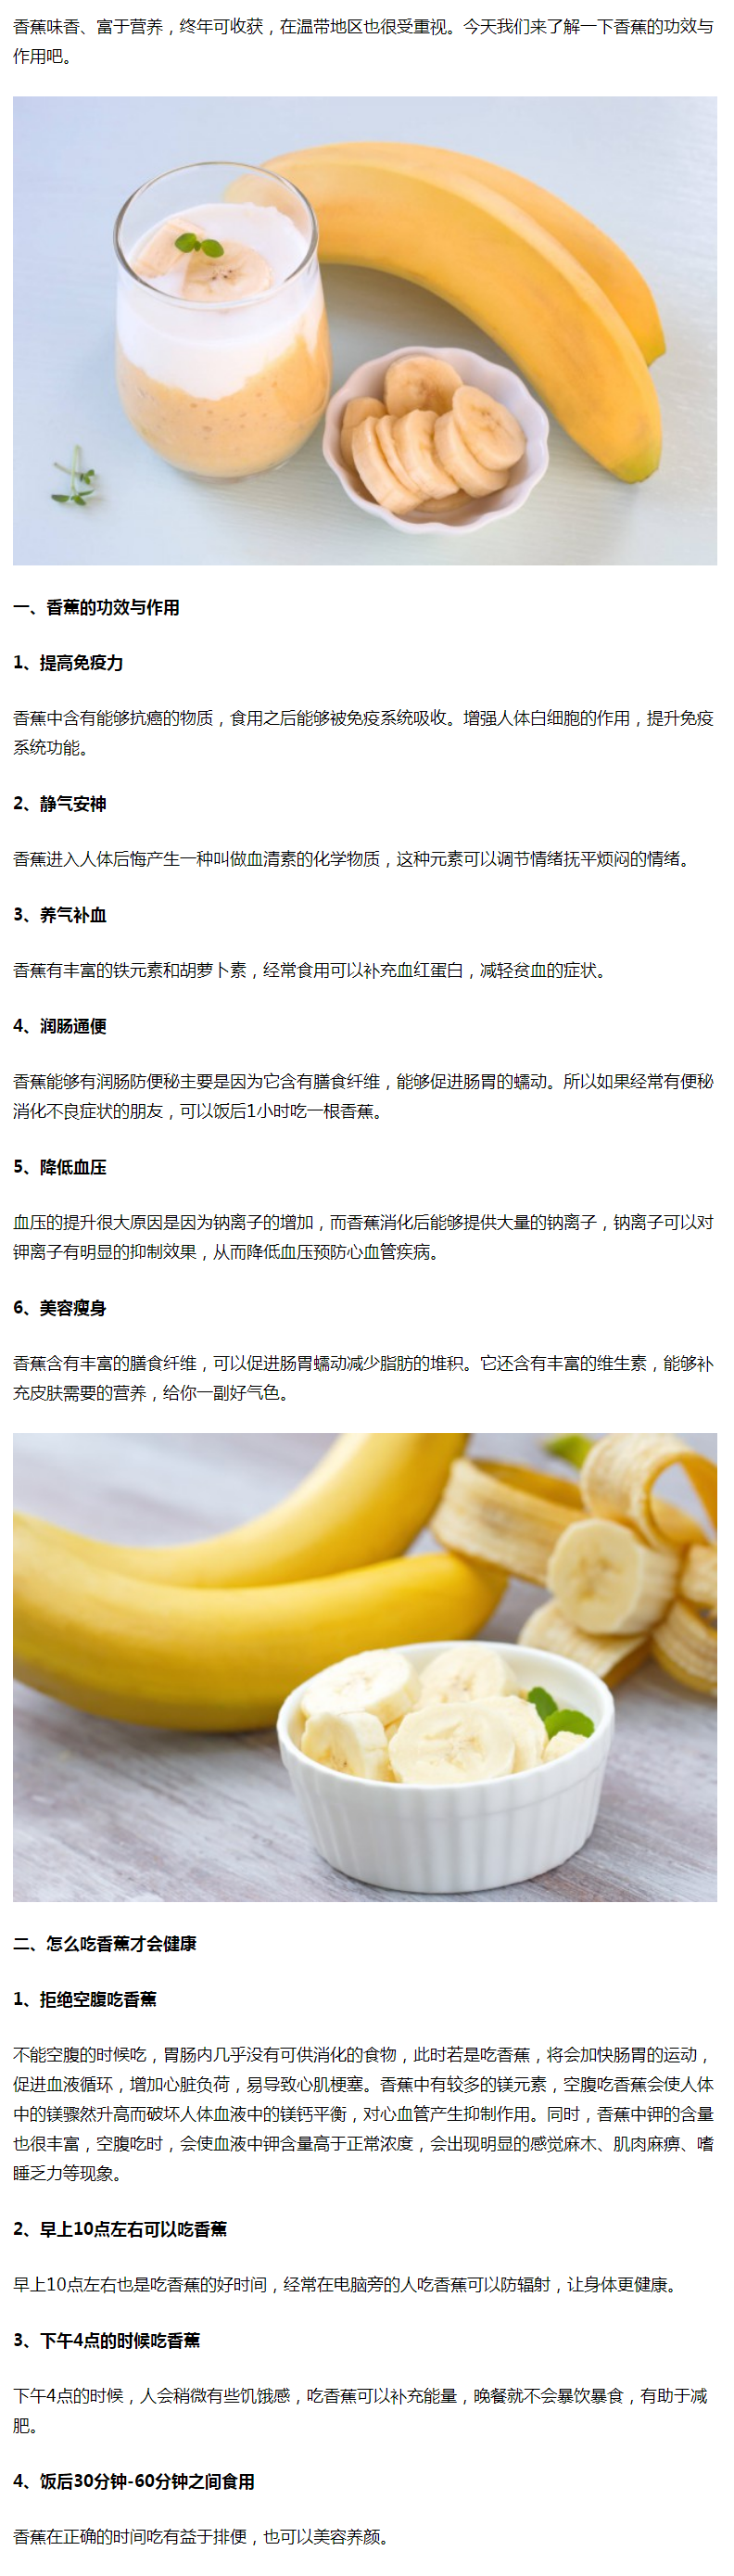 香蕉的功效与作用,教你怎么吃香蕉才会健康